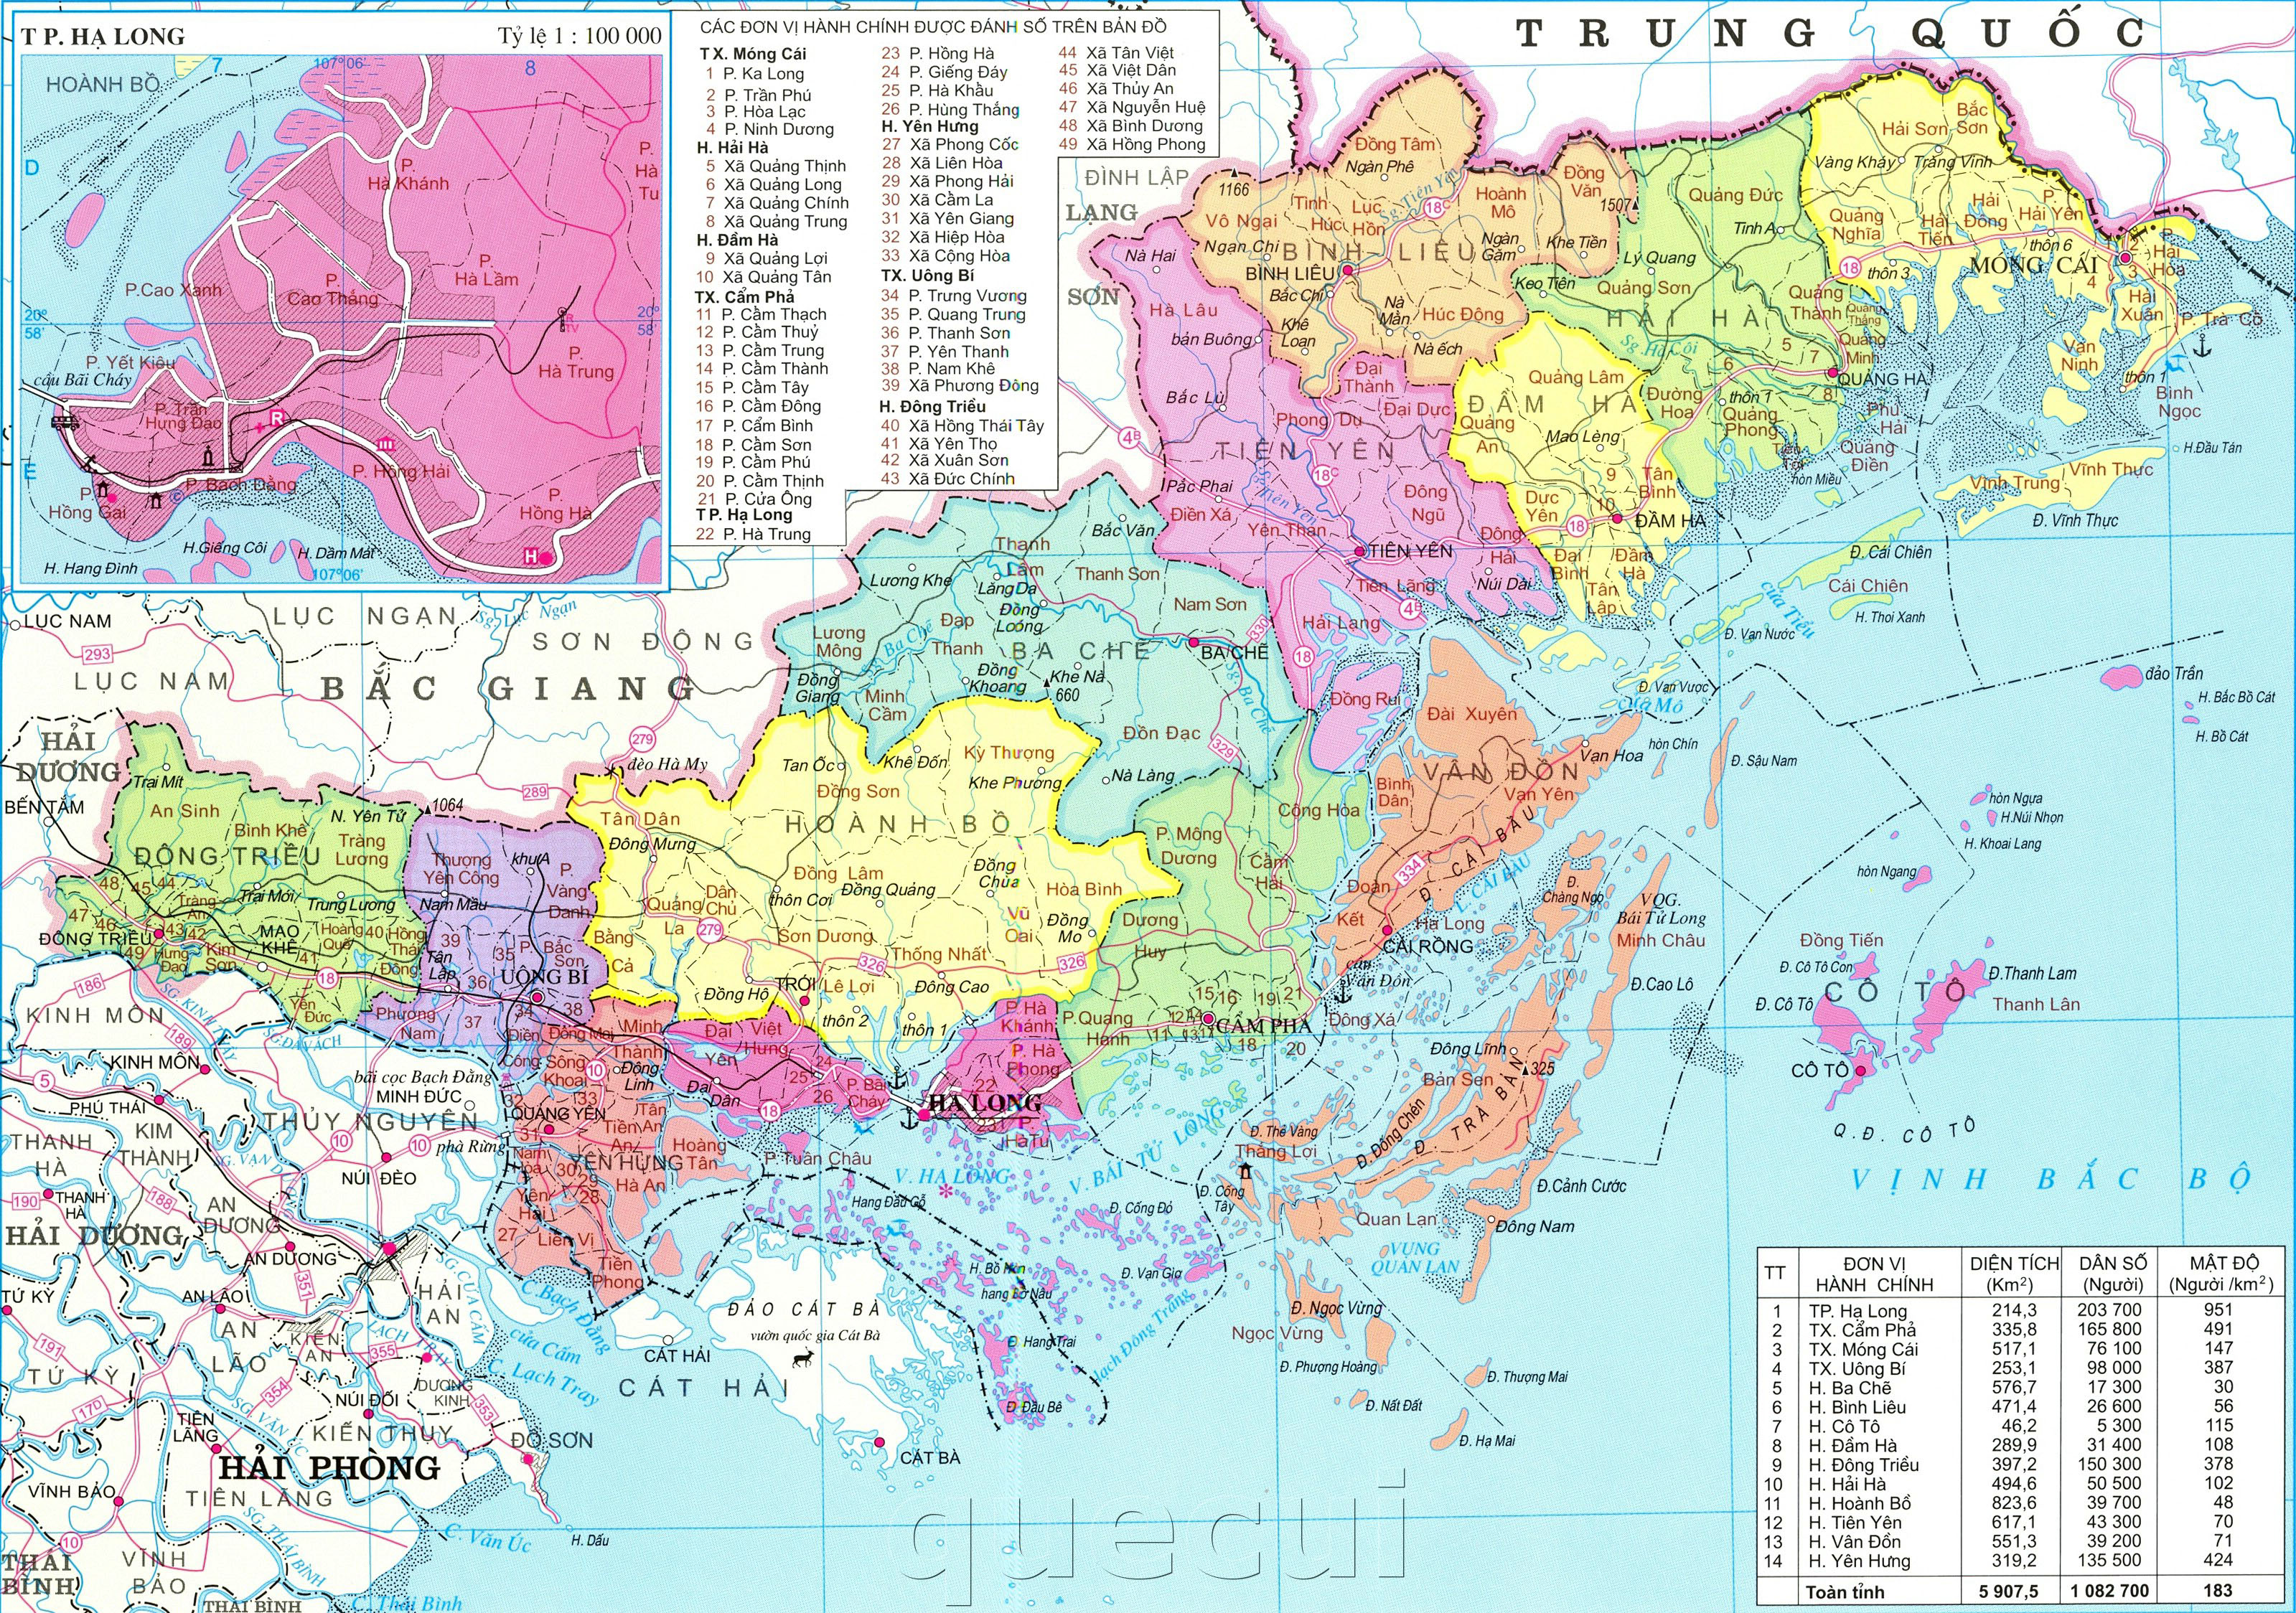 Bạn đang muốn tìm hiểu về Quảng Ninh? Bản đồ hành chính tỉnh Quảng Ninh sẽ giúp bạn hiểu rõ hơn về các địa điểm cũng như khu vực đó. Đội ngũ chuyên gia của chúng tôi đã thực hiện bản đồ này với sự chính xác và đầy đủ thông tin nhất.